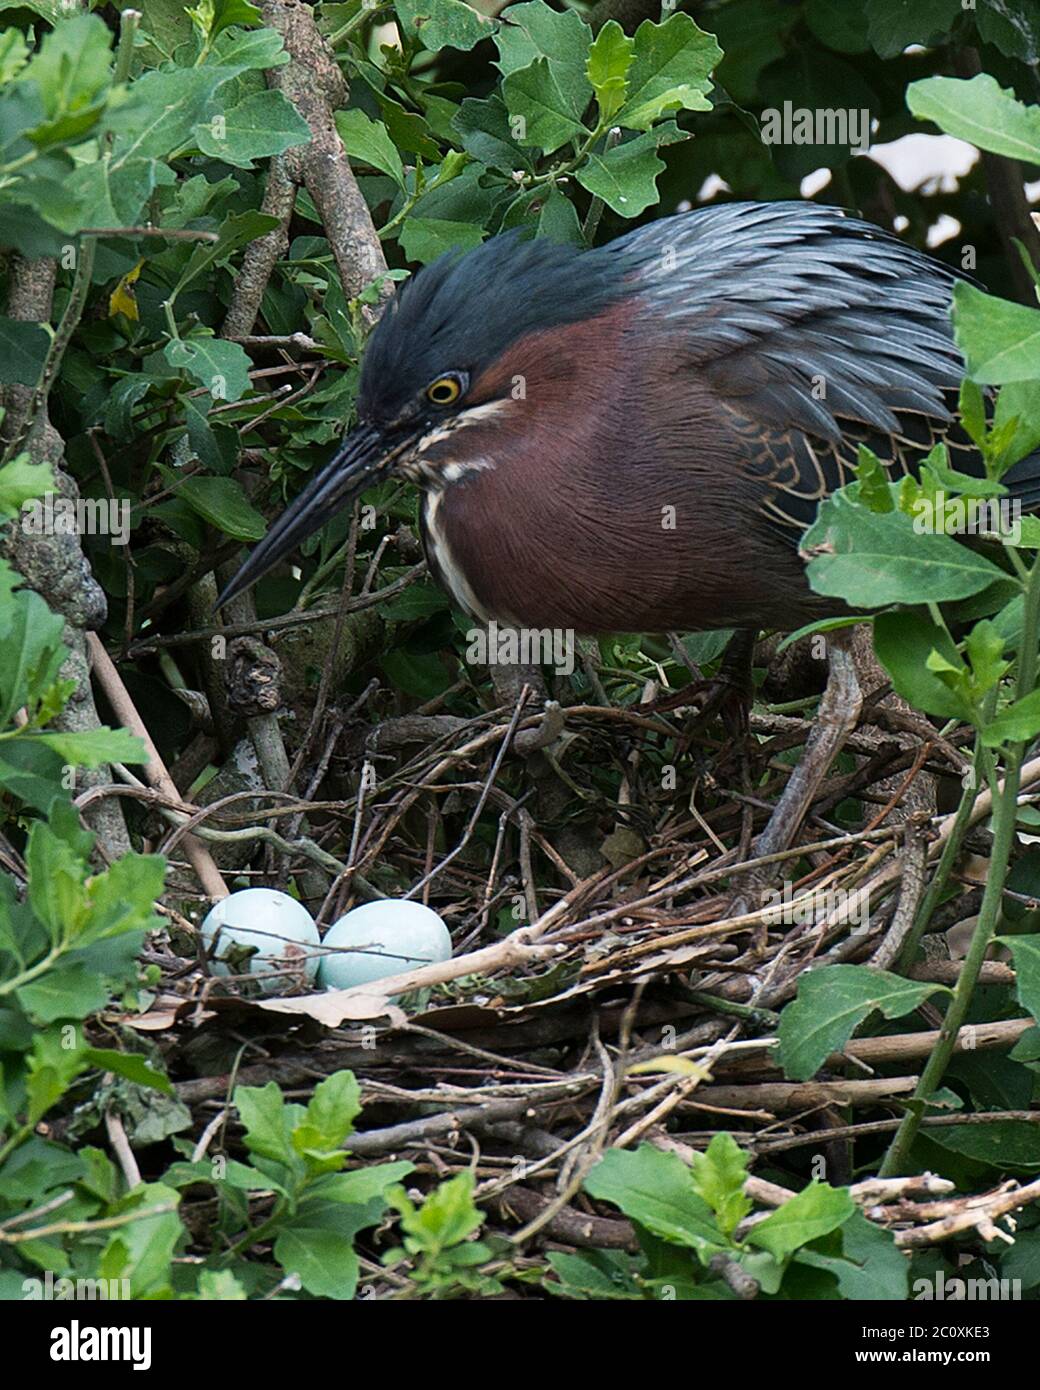 Grüner Reiher Vogel mit Eiern auf dem Nest mit Hintergrund und Vordergrund Laub mit Eiern, grün blauen Federn Gefieder, Schnabel, Auge. Stockfoto